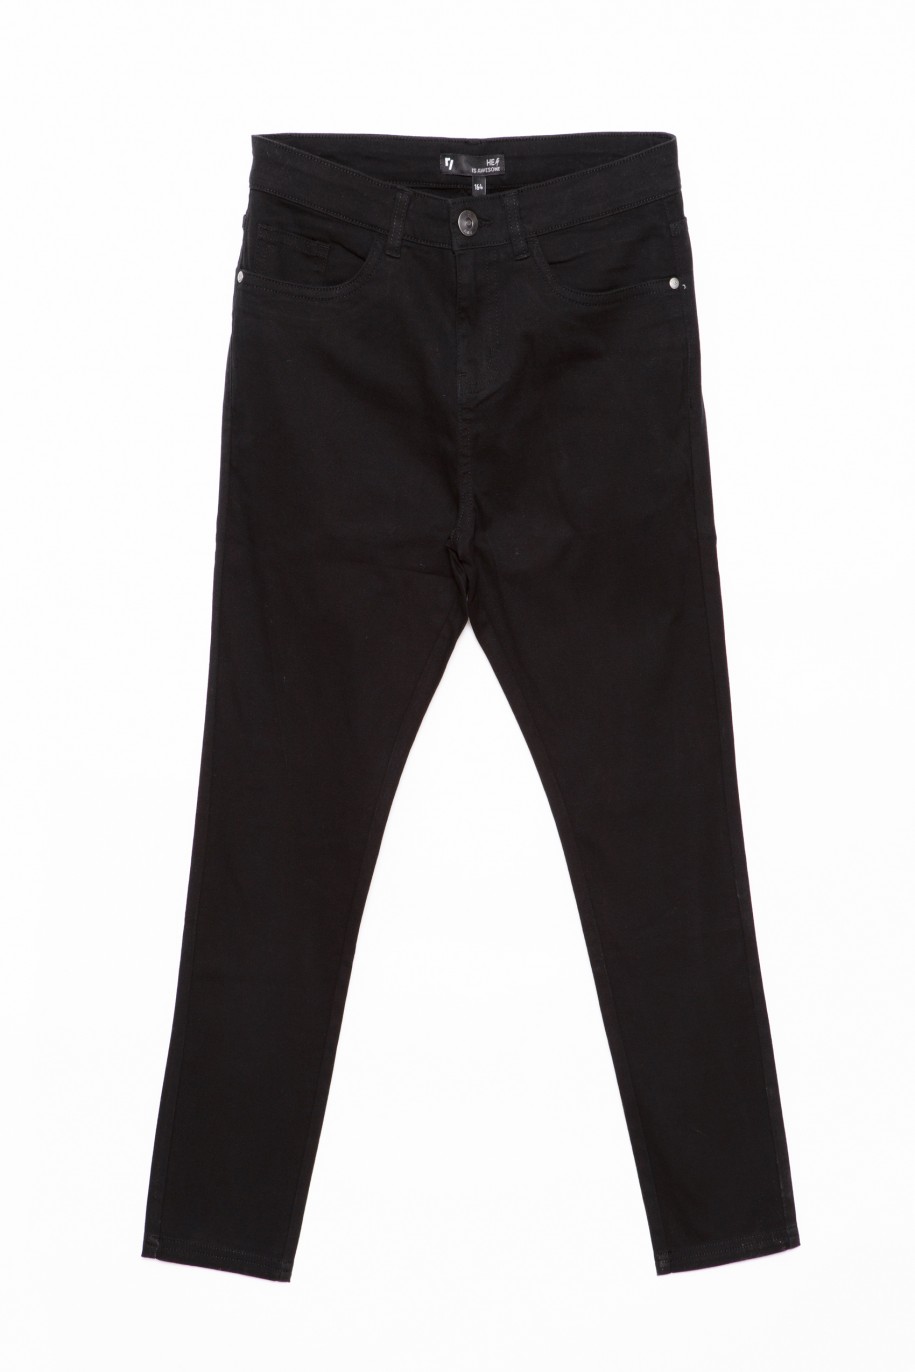 Czarne materiałowe spodnie dla chłopaka REGULAR - 28419